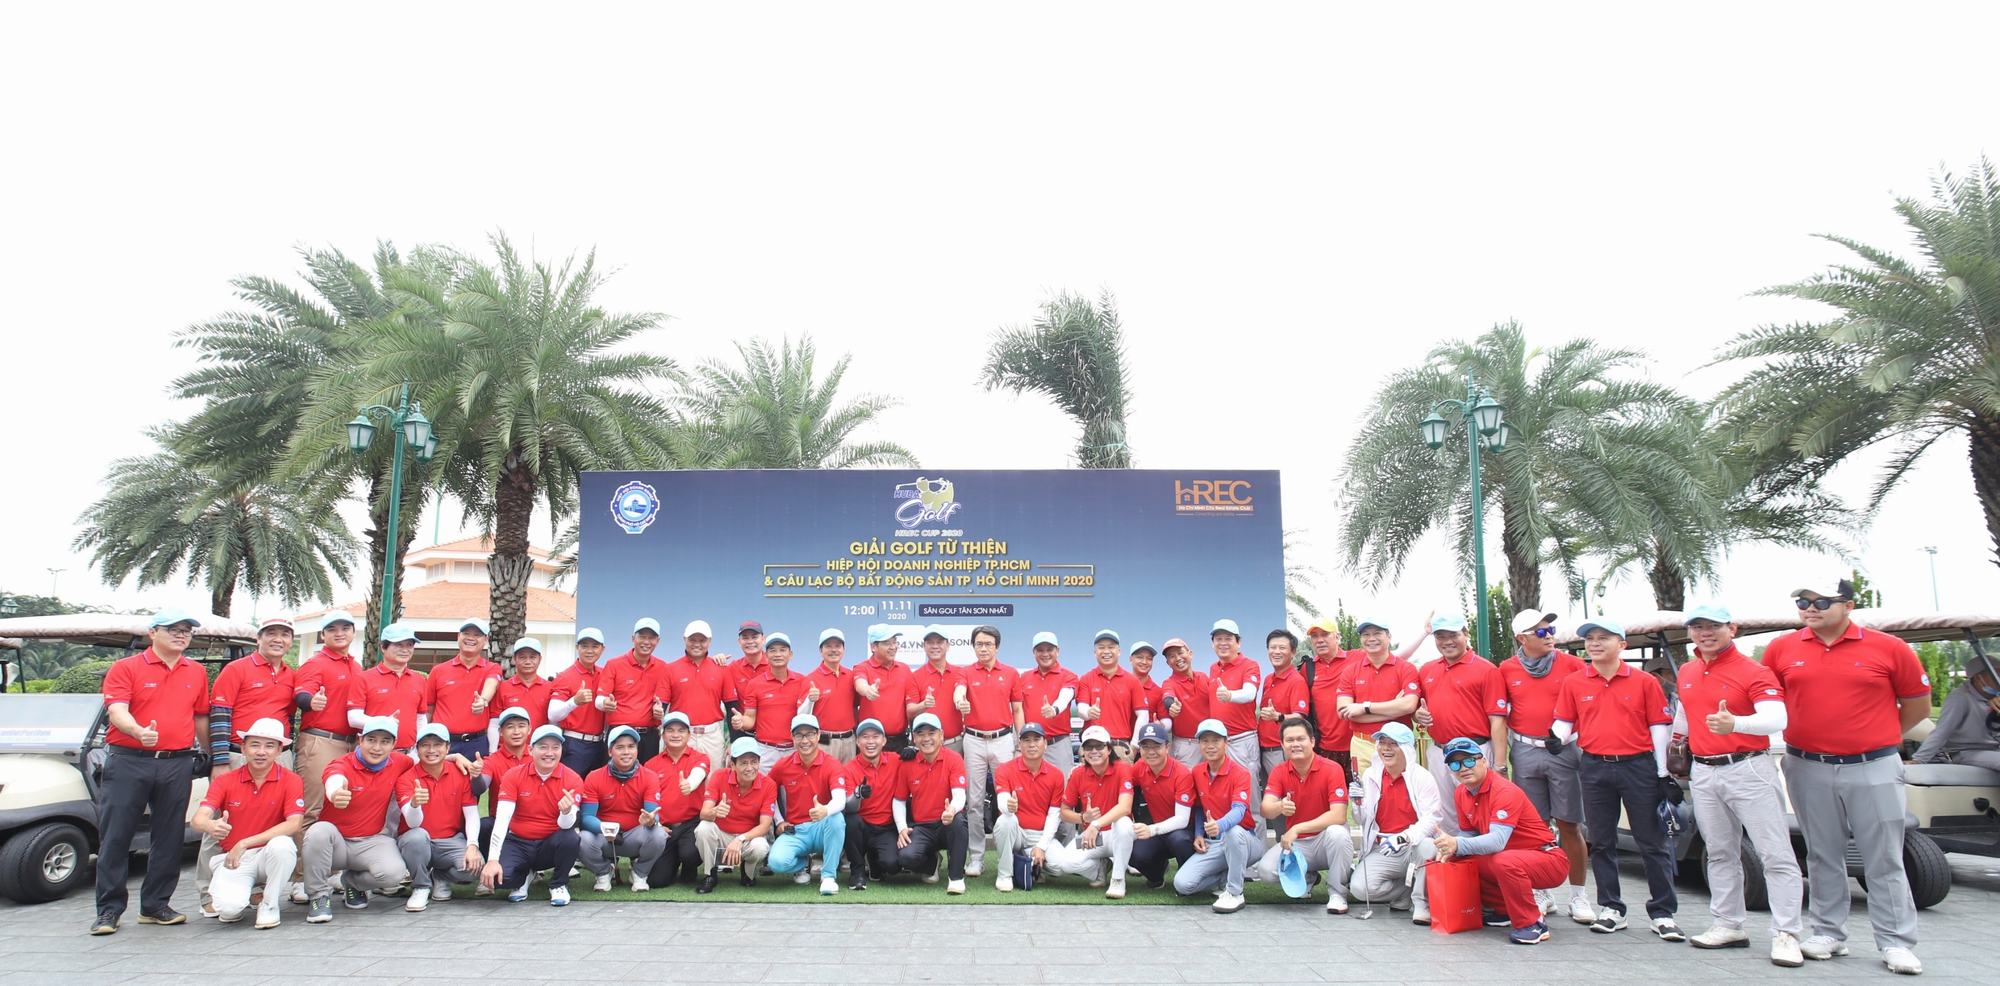 Giải đấu có sự tham gia của 236 golfer